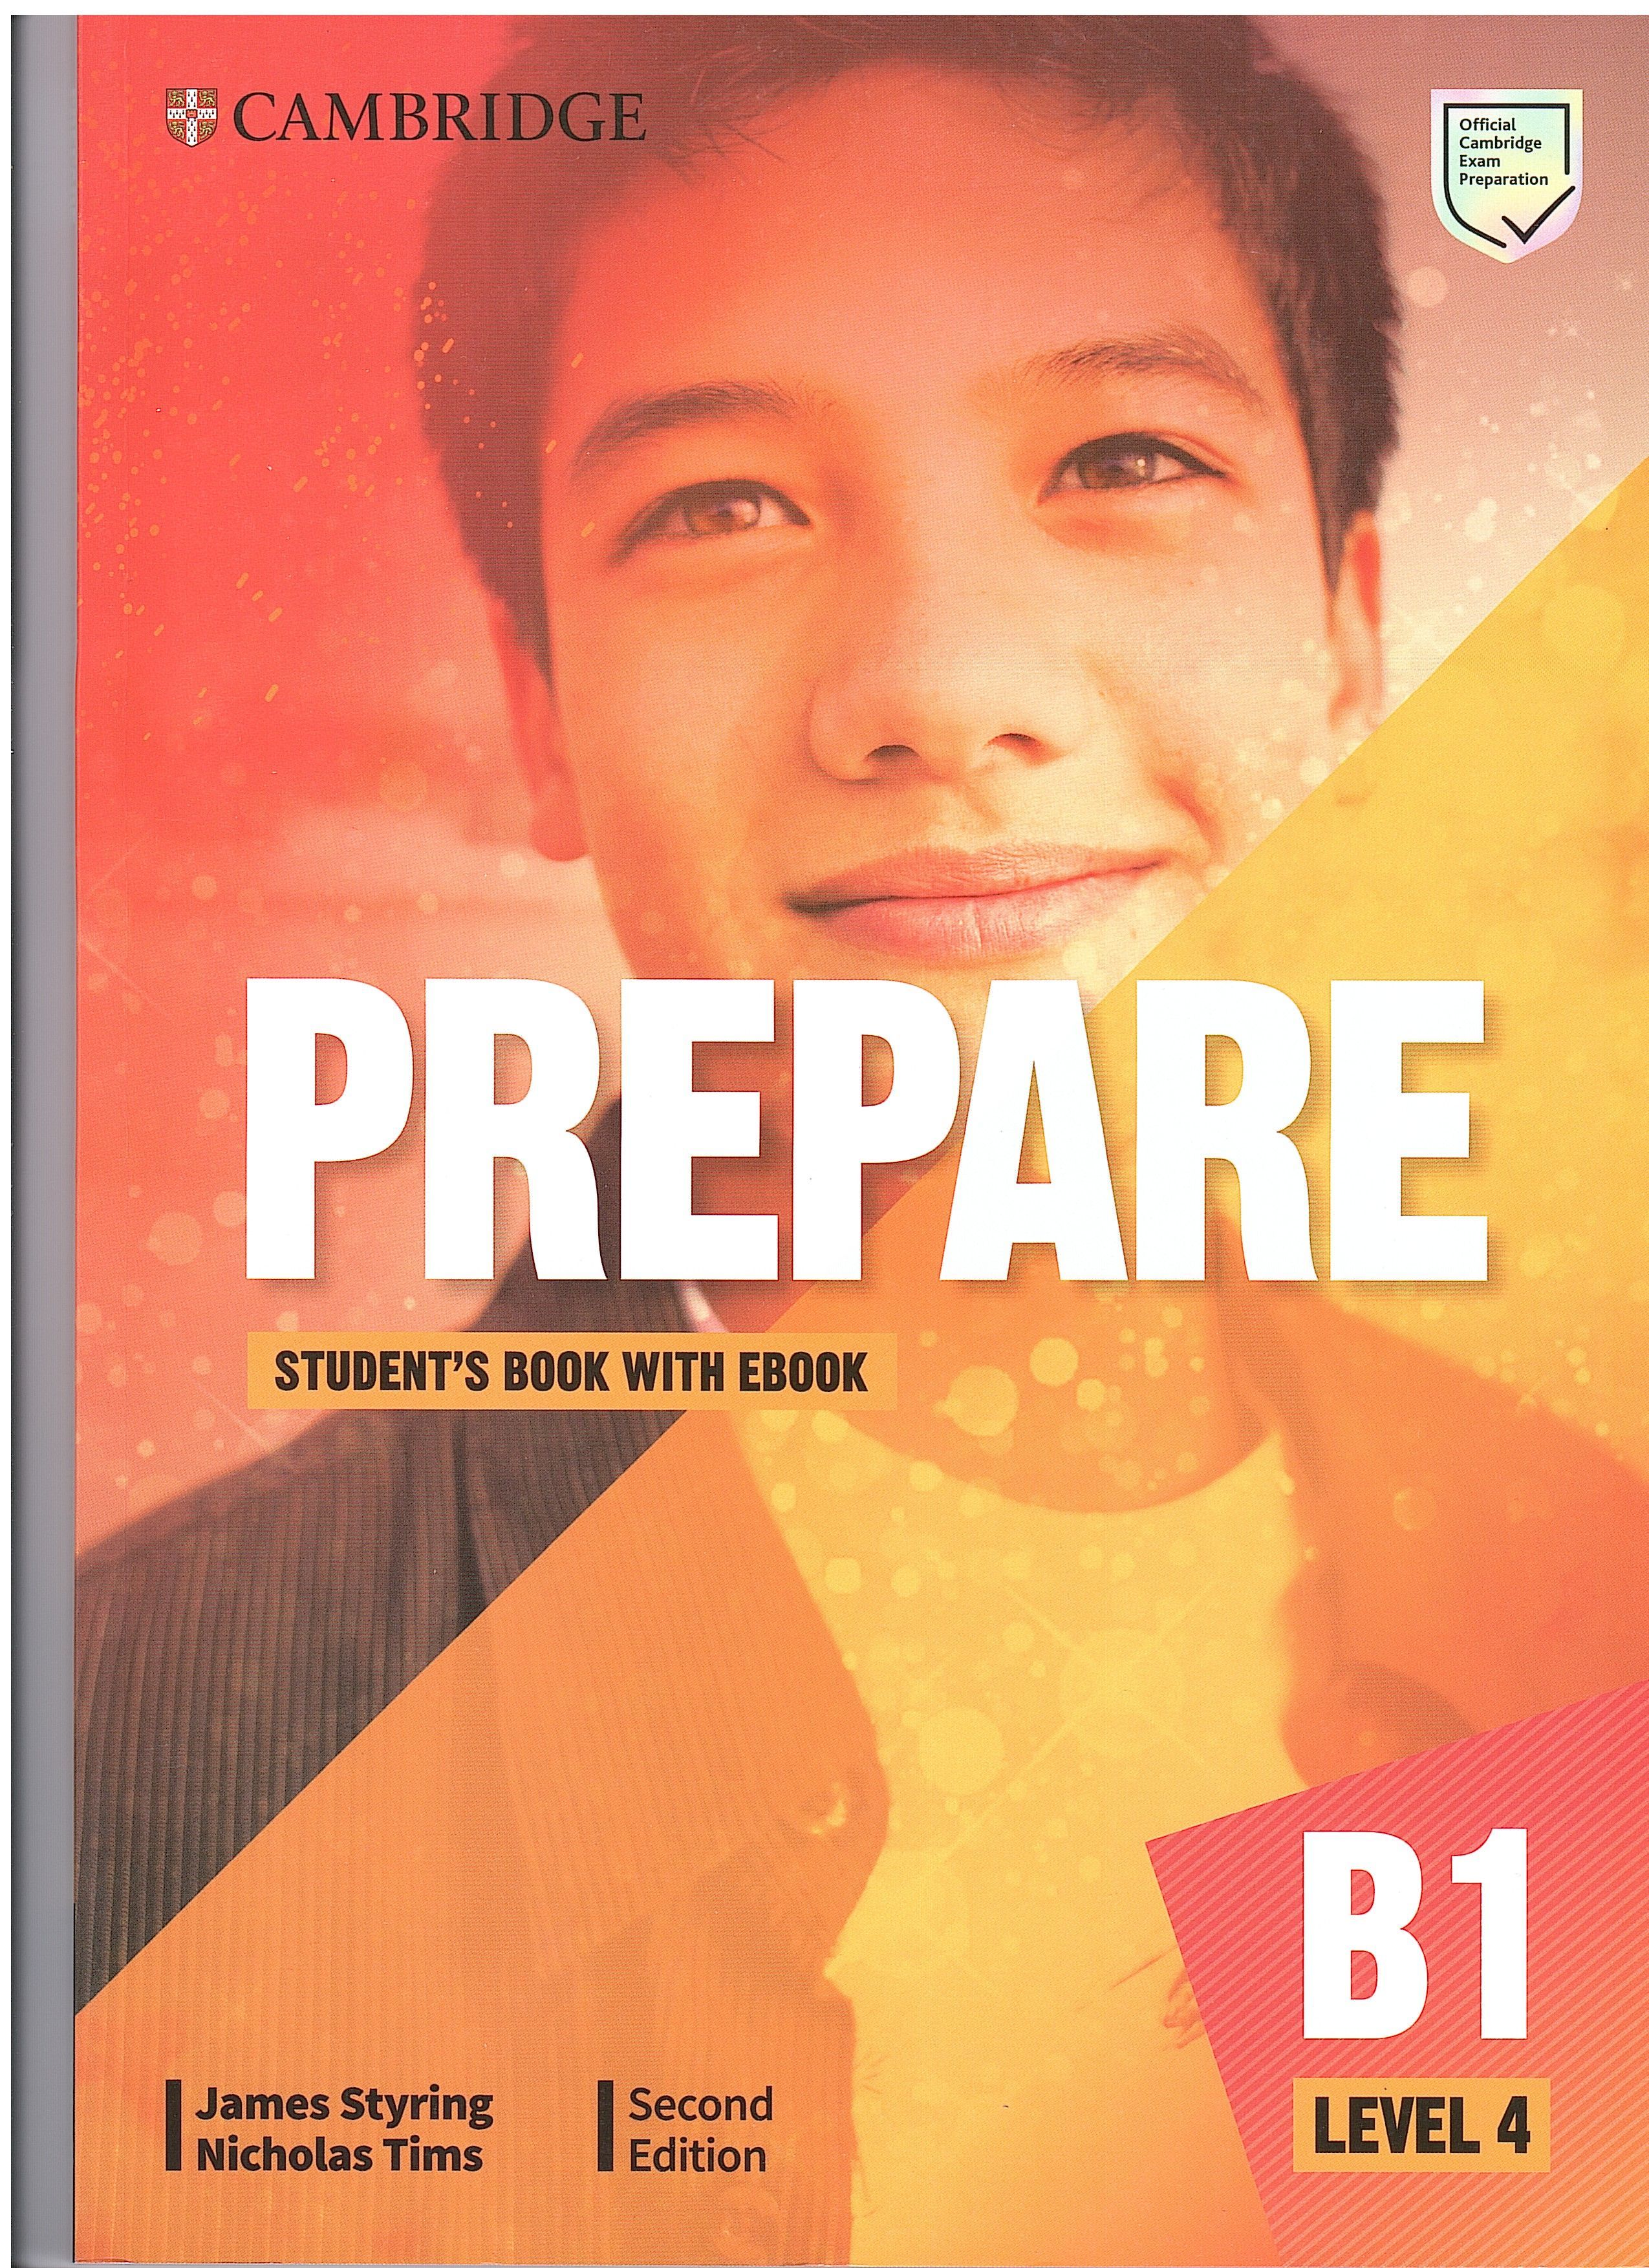 Prepare 4. Cambridge prepare students book b1 Level 4. Cambridge prepare b1 Level 4 second Edition. Prepare second Edition Level 1. Prepare student's book Cambridge a1 Level 1.